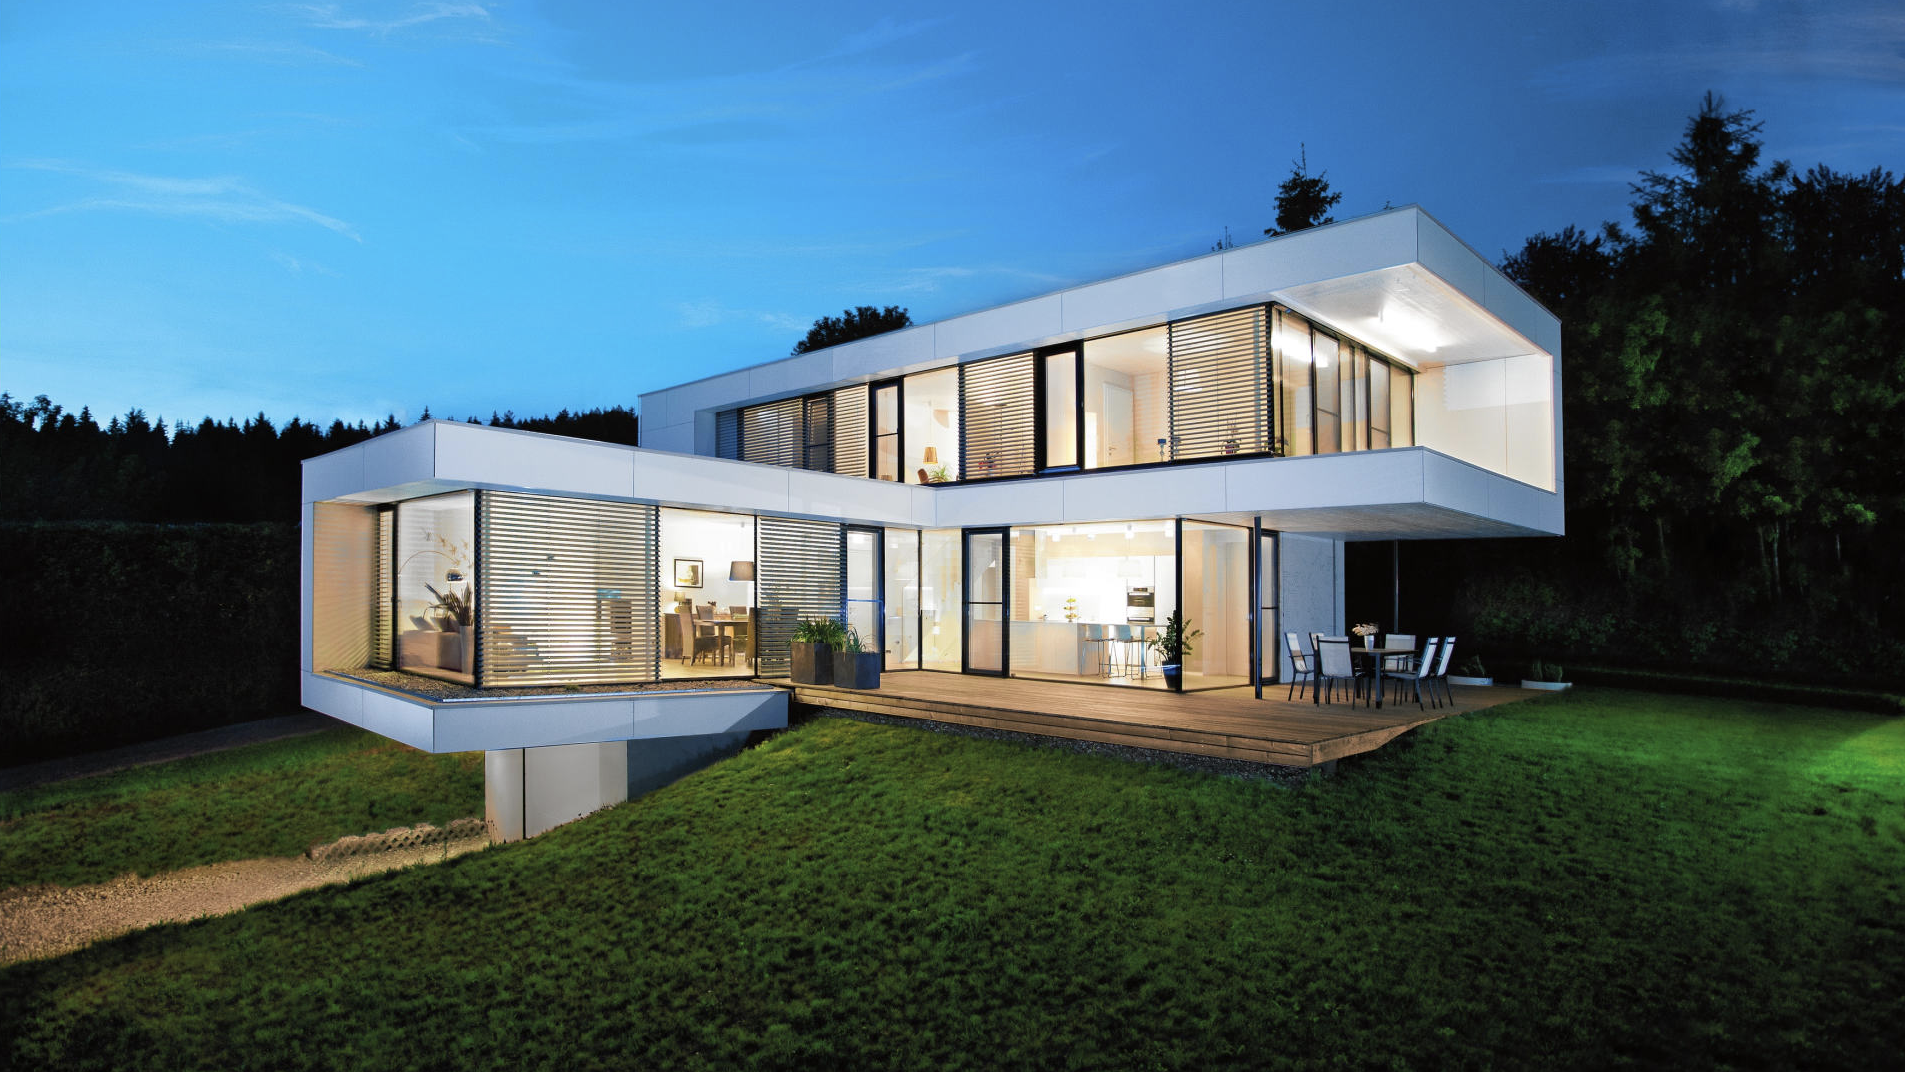 Das Premiumhaus in der Nähe des Klopeiner Sees zählt zu den schönstens Häusern Europas. (Bild: GRIFFNER)